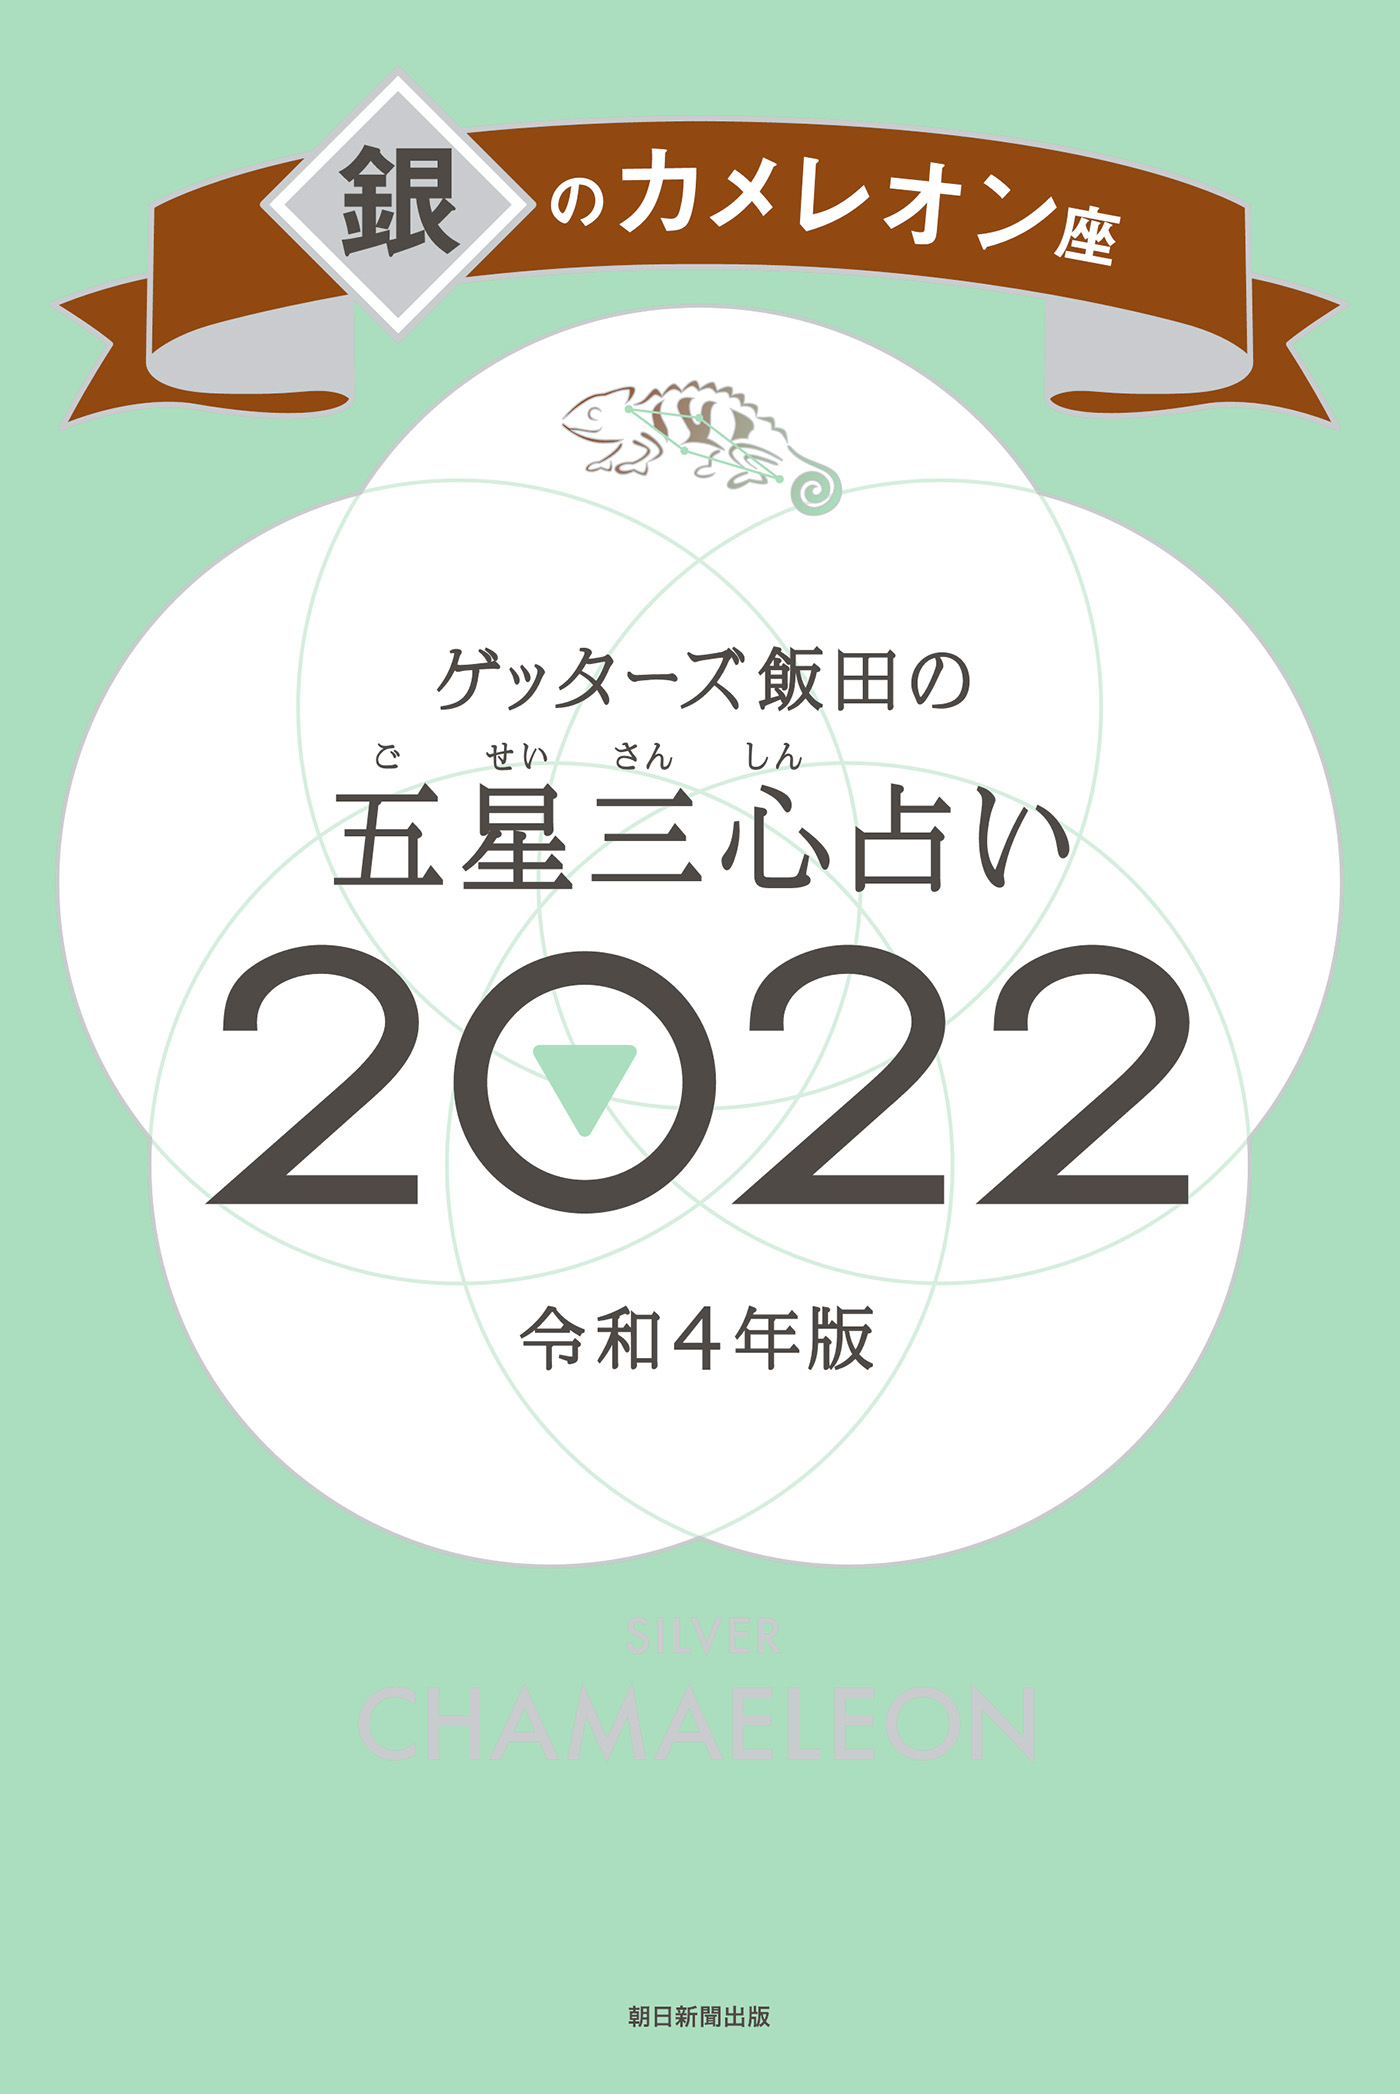 ゲッターズ飯田の五星三心占い銀のカメレオン座2022